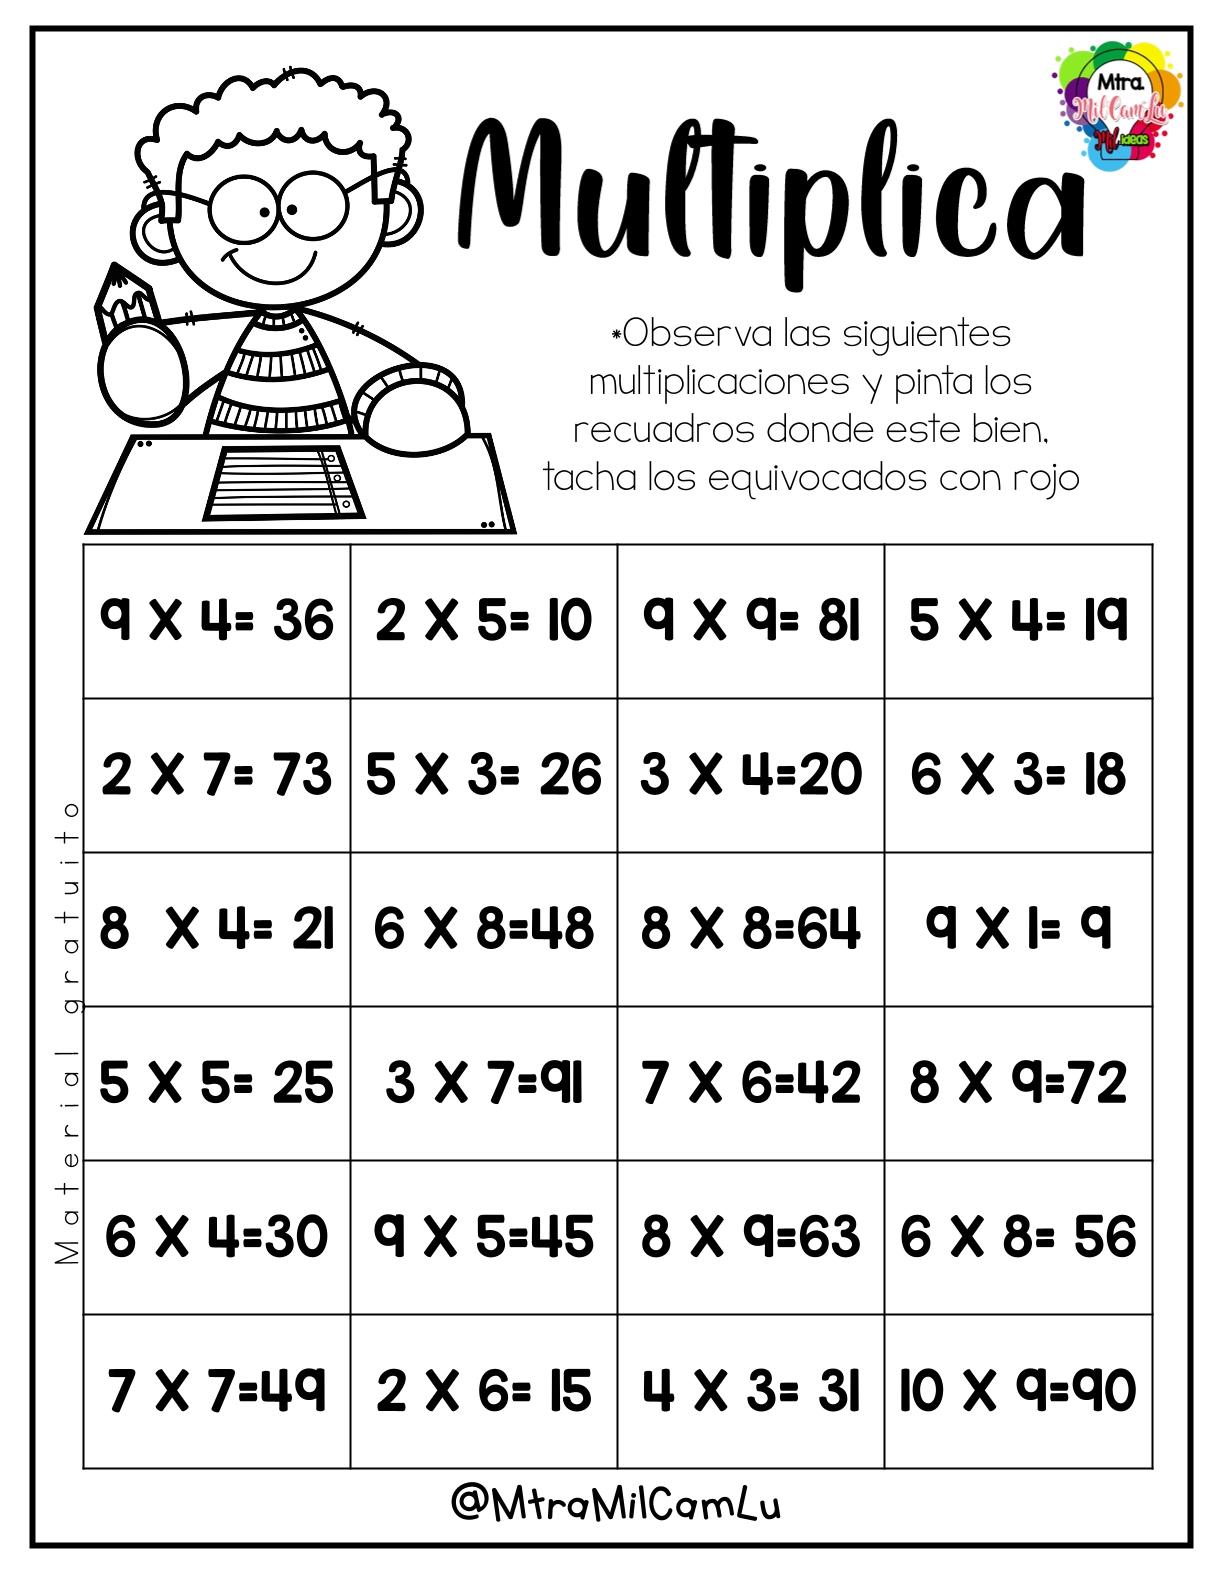 material-repaso-multiplicaciones-materiales-educativos-para-maestras